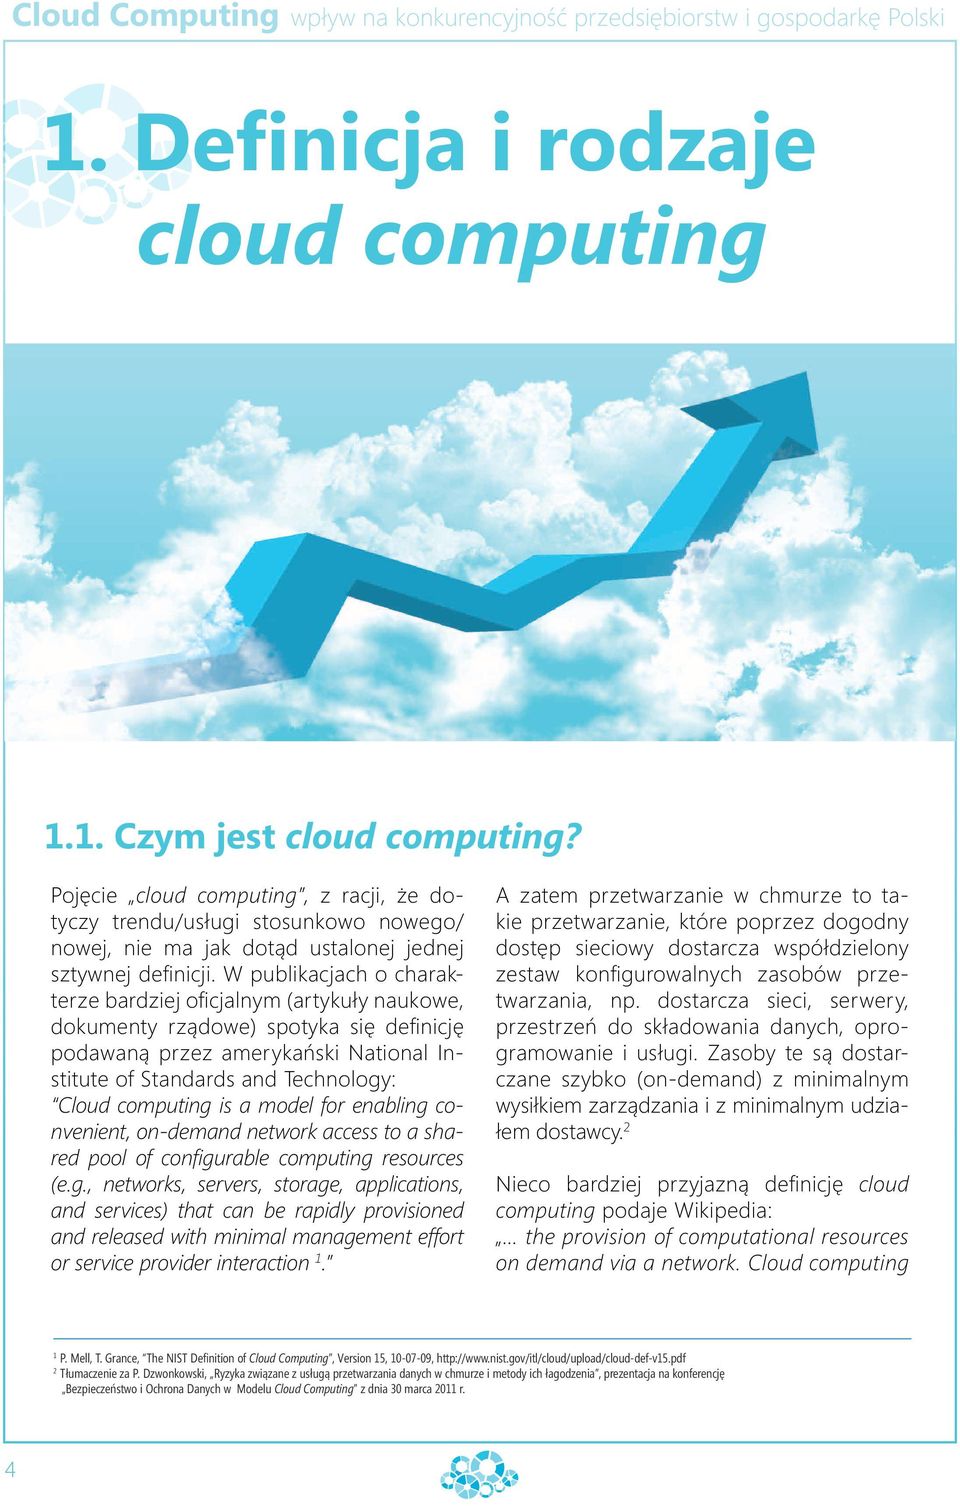 W publikacjach o charakterze bardziej oficjalnym (artykuły naukowe, dokumenty rządowe) spotyka się definicję podawaną przez amerykański National Institute of Standards and Technology: Cloud computing